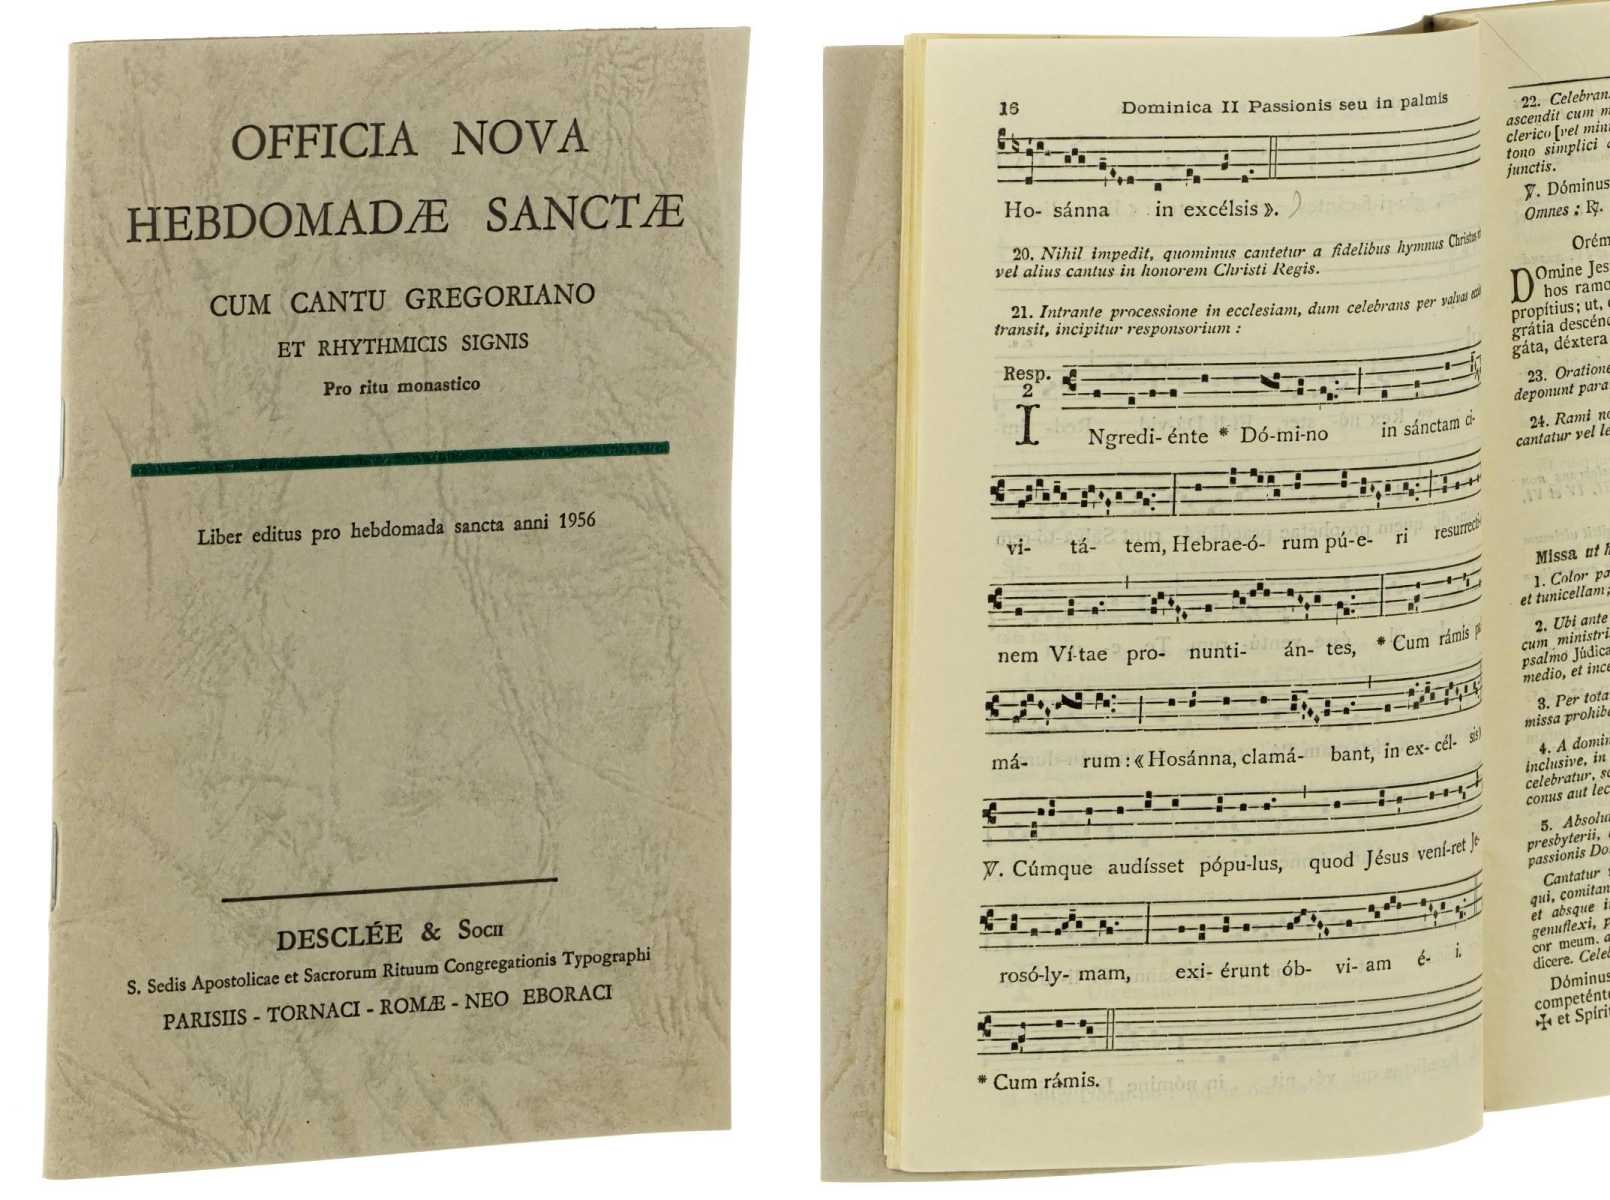   Officia nova Hebdomadae Sanctae cum cantu gregoriano et rhythmicis signis. Liber editus pro hebdomada sancta anni 1956. 